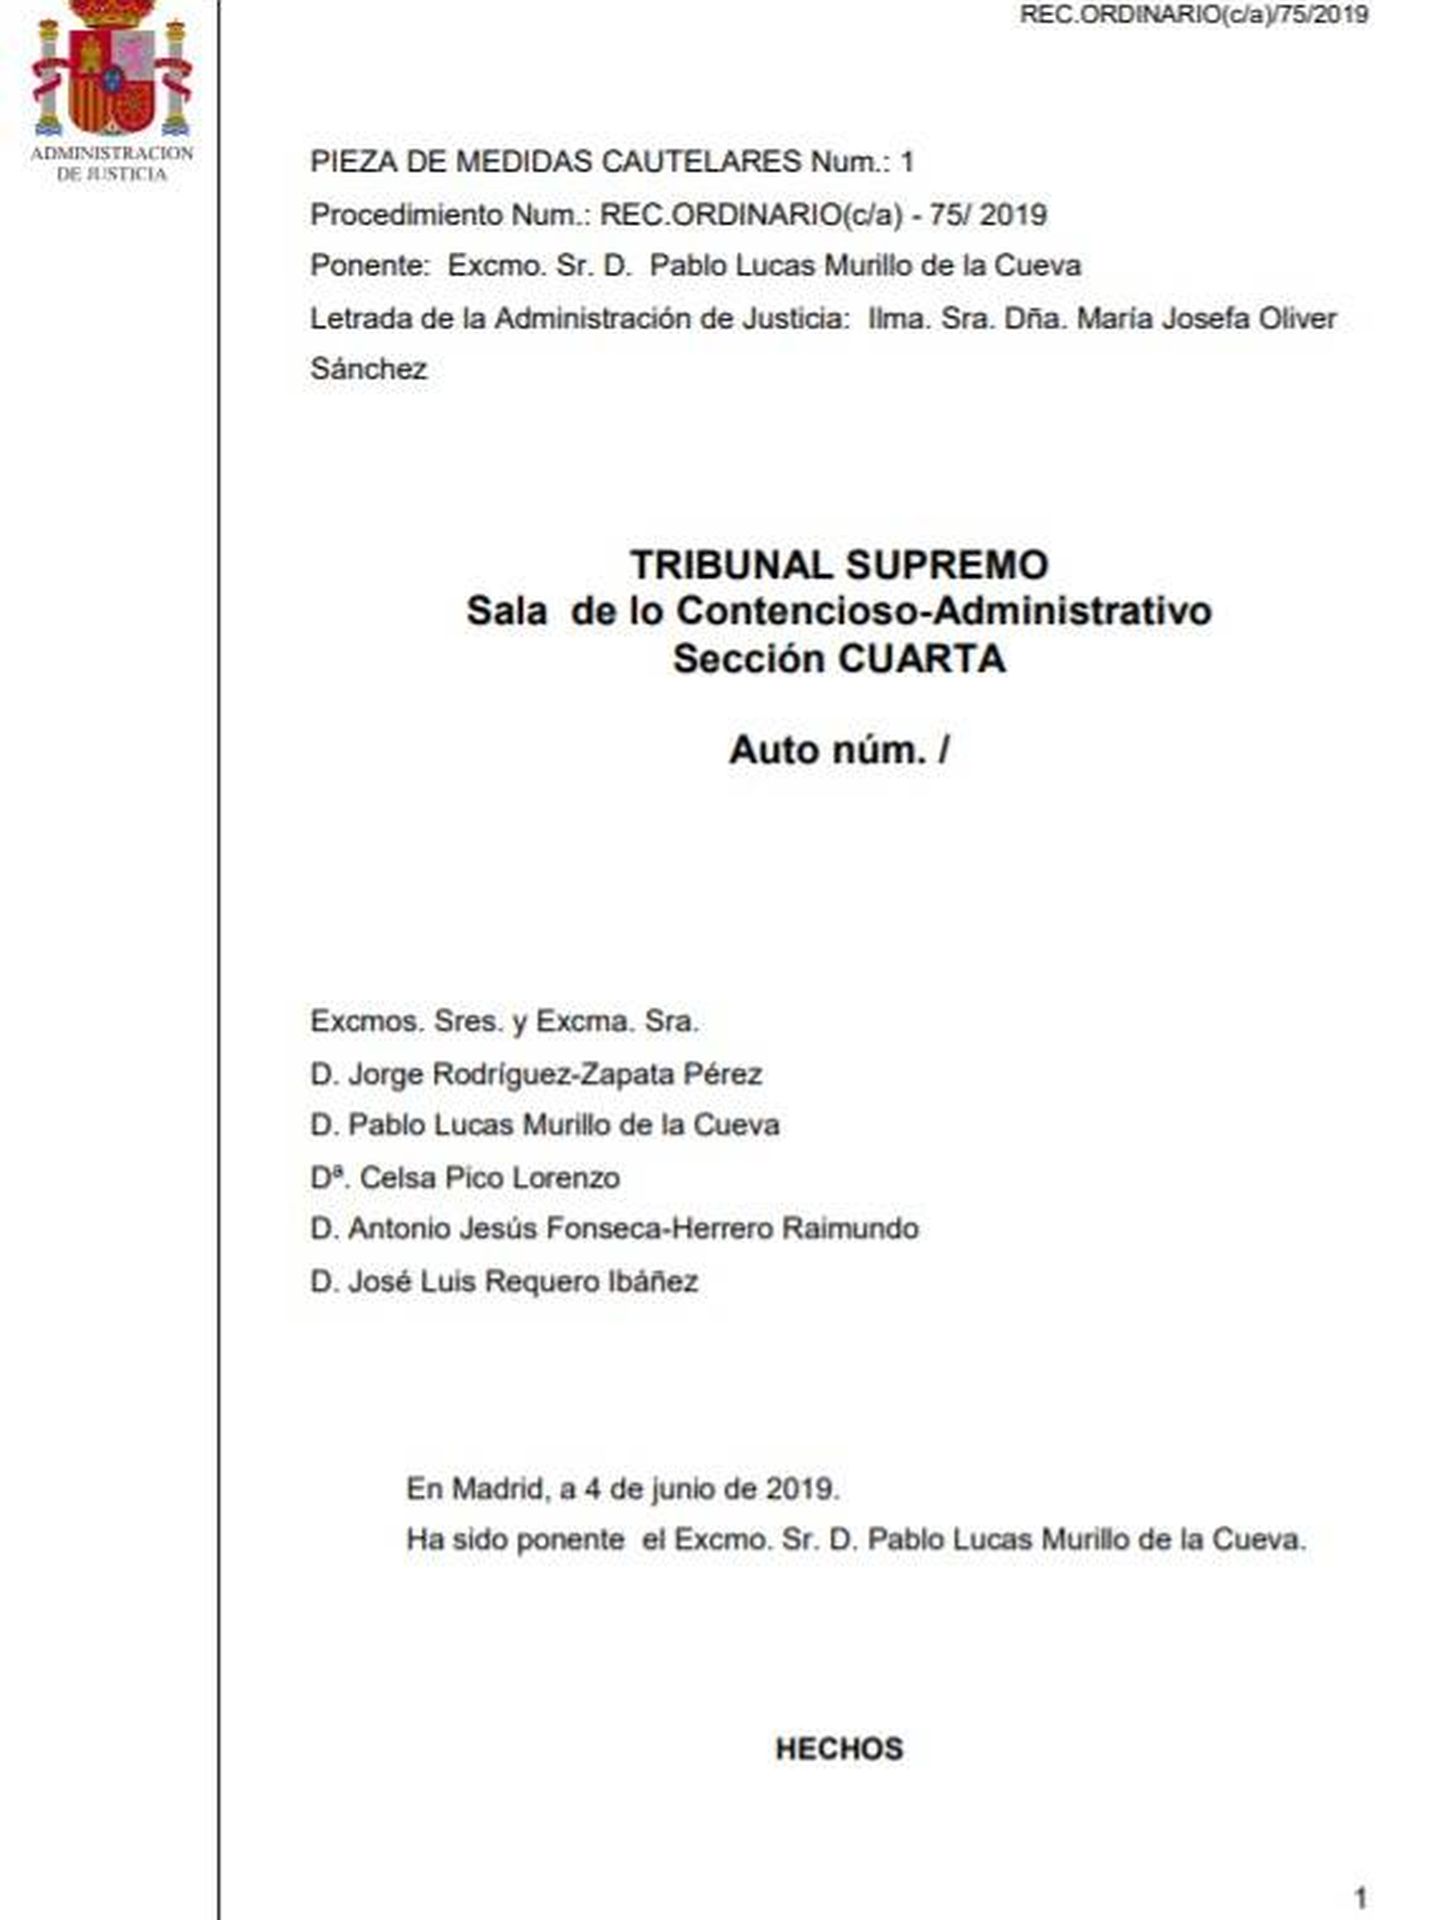 Consulte aquí en PDF el auto del Tribunal Supremo de suspensión cautelar de la exhumación de Francisco Franco. 